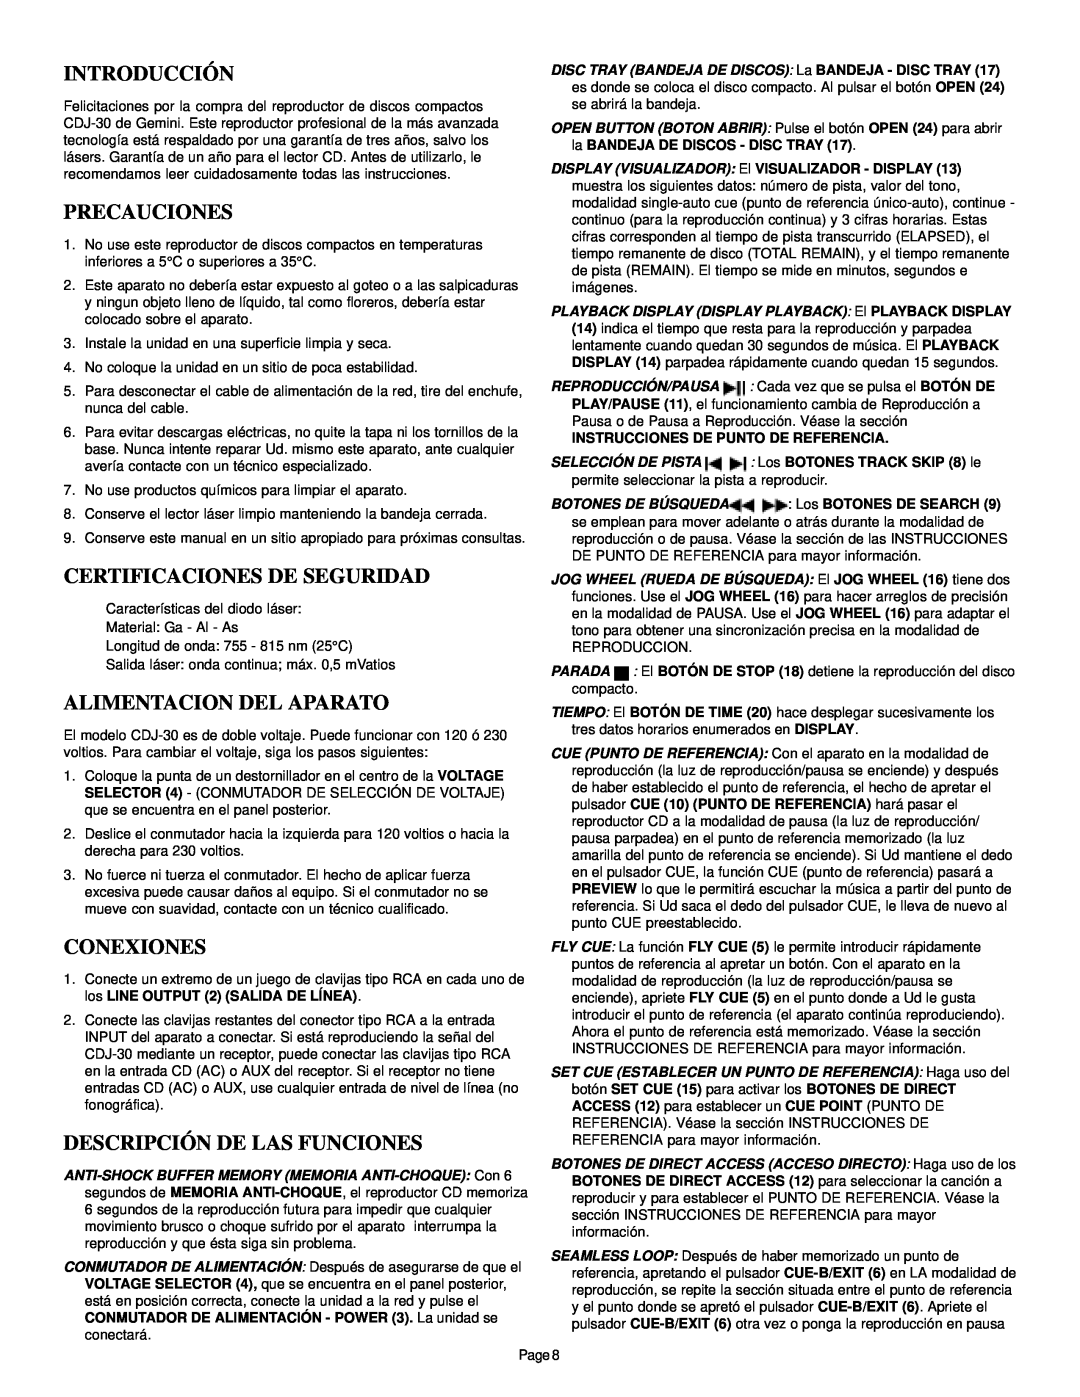 Gemini CDJ-30 manual Introducción, Precauciones, Certificaciones De Seguridad, Alimentacion Del Aparato, Conexiones 